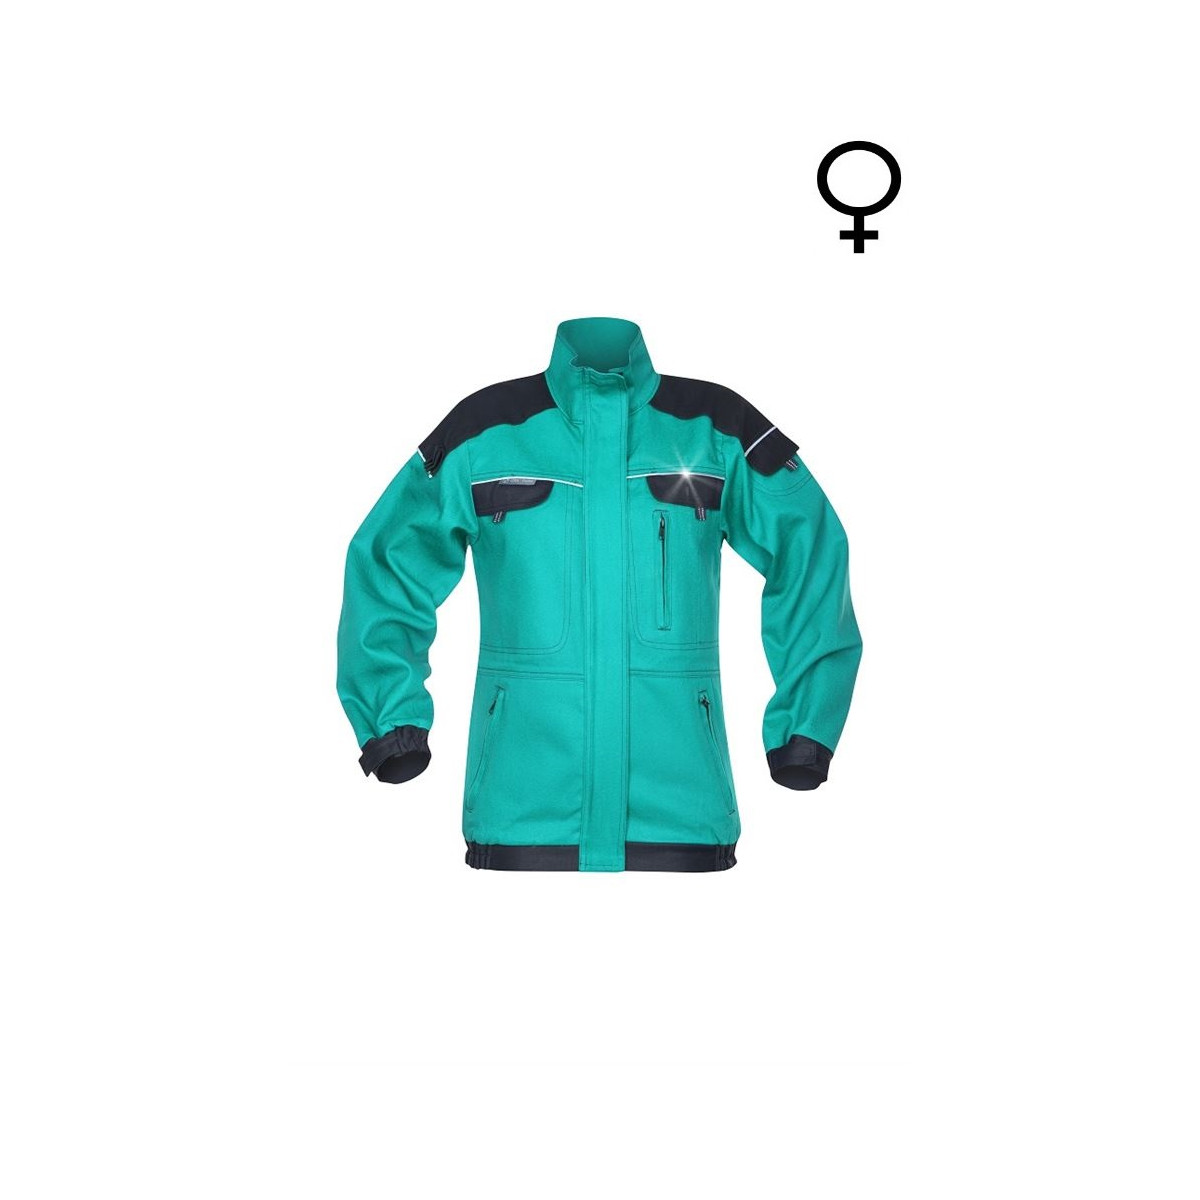 bluzy-robocze-bhp-hurtownia-internetowa - Damska zielona bluza robocza cool trend H8193 Ardon Safety